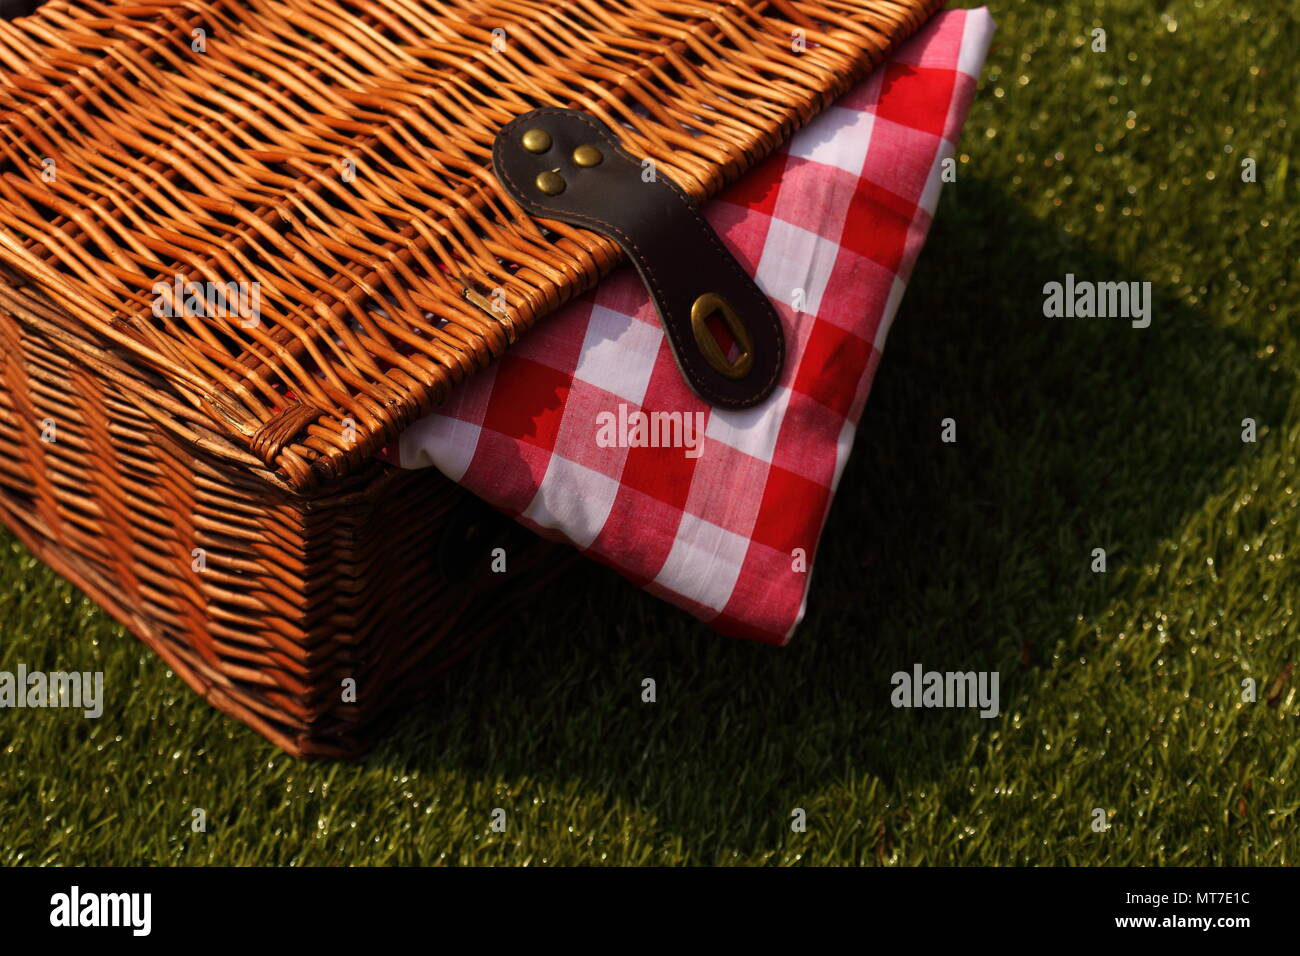 Rattan Picknickkorb mit einer rot-weiß karierten Tuch auf einem Gras Hintergrund Stockfoto